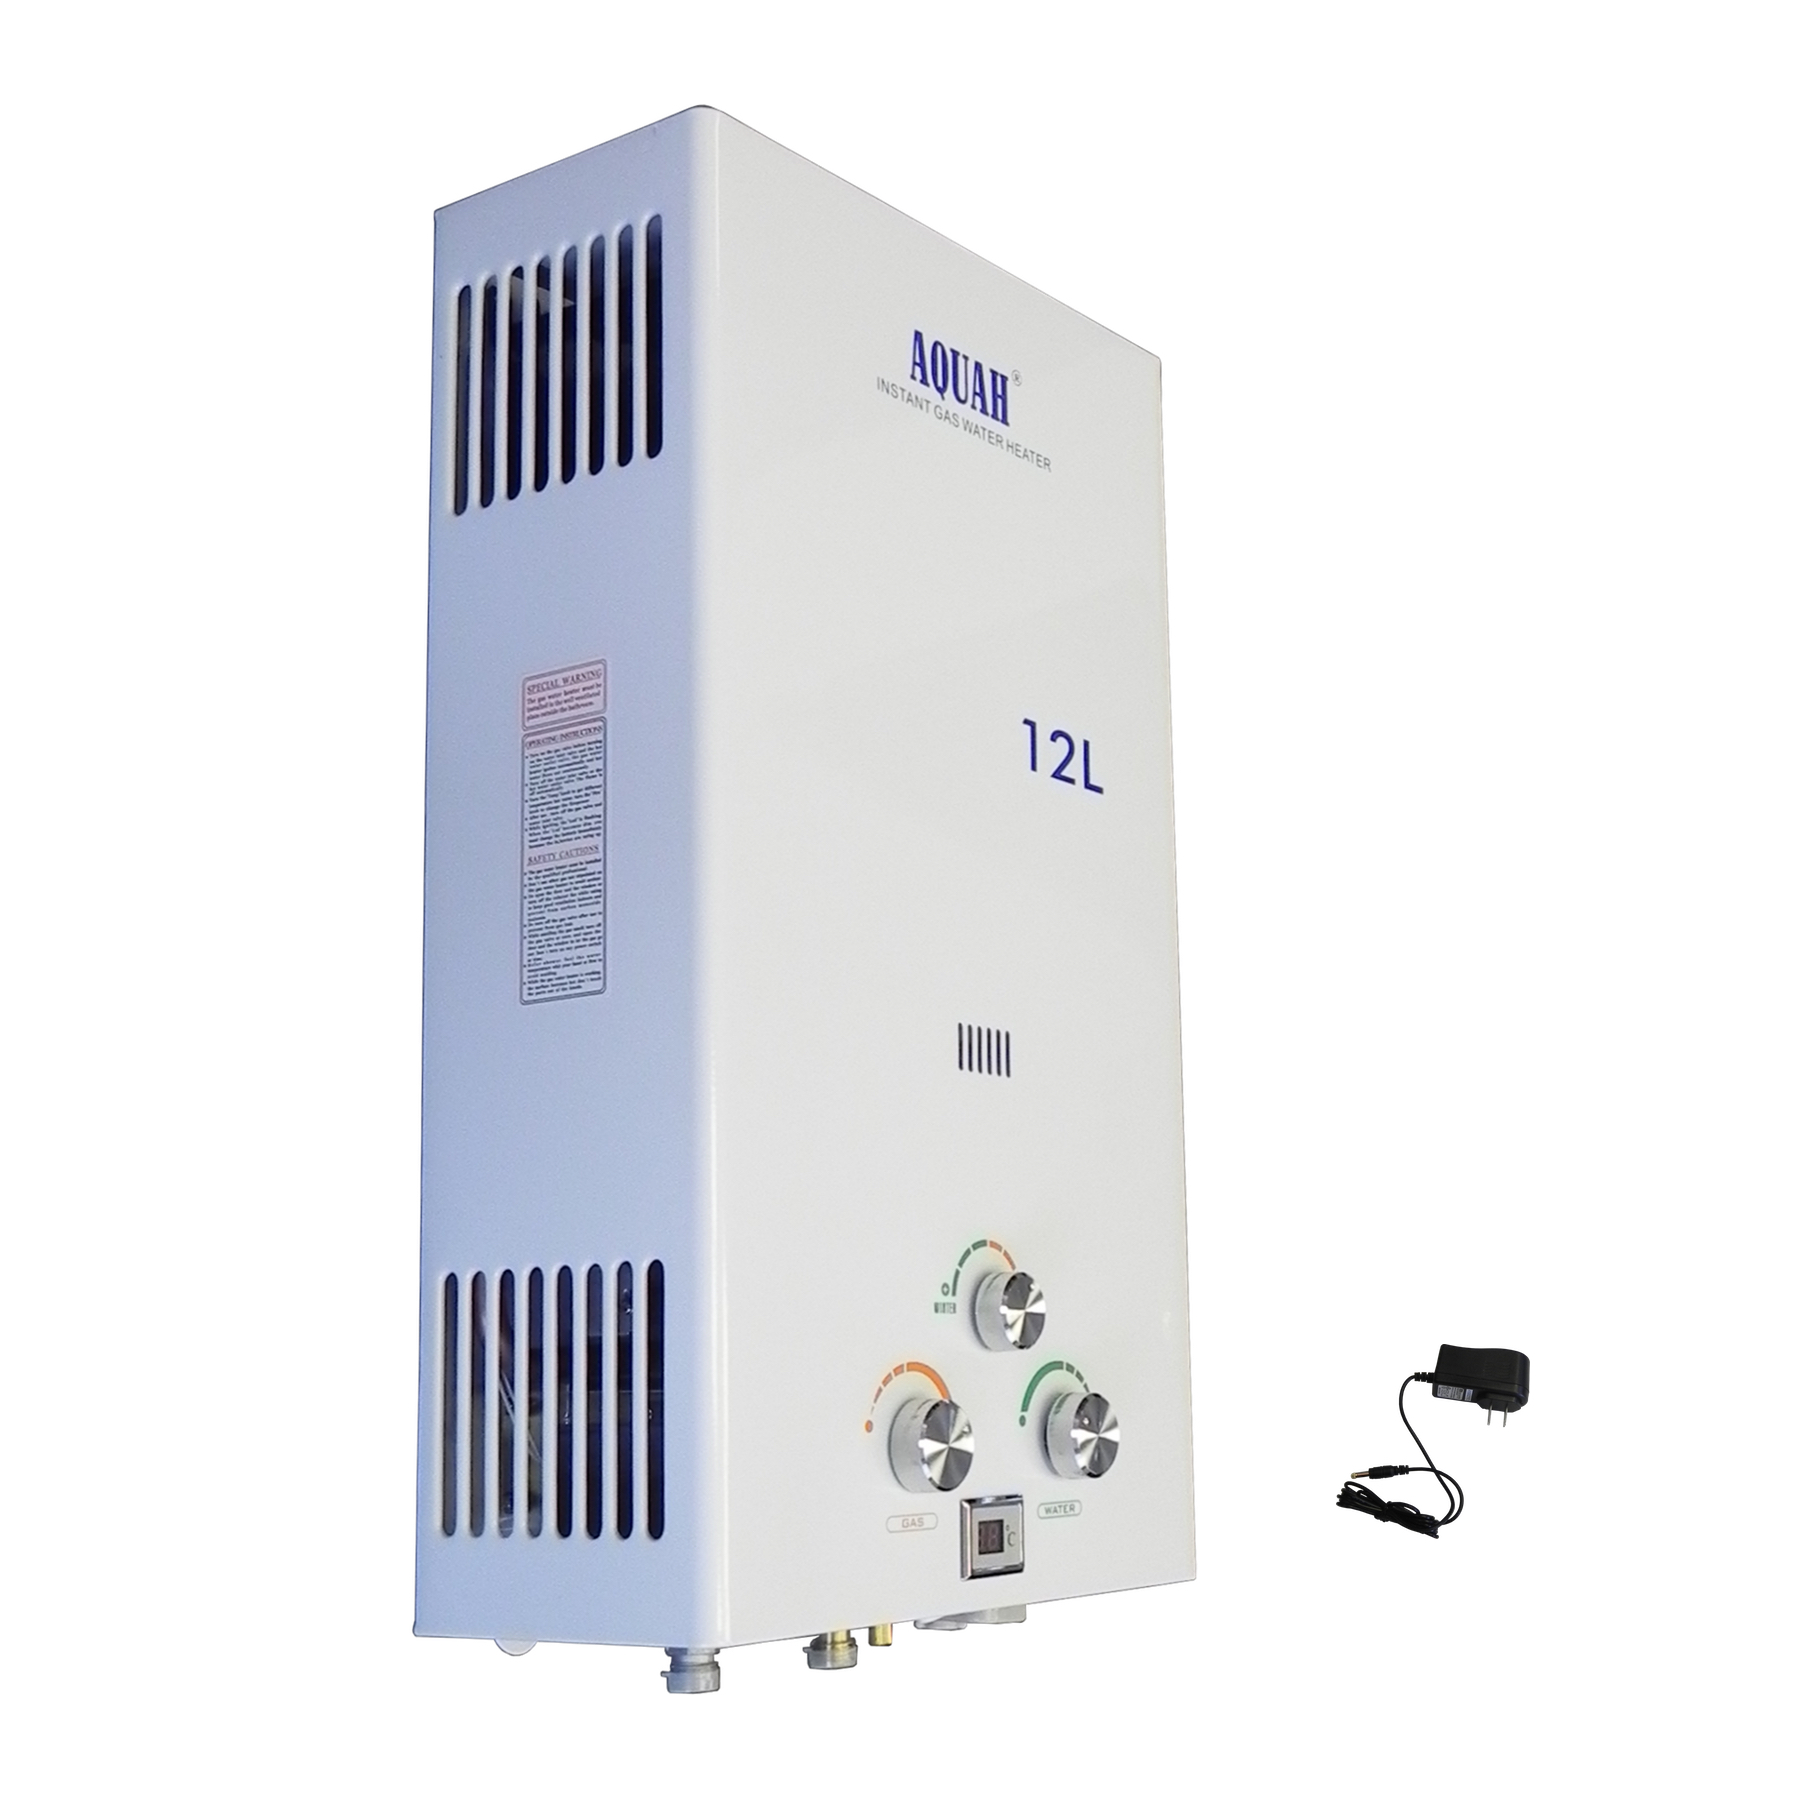 AQUAH 12L (3.2 GPM) Liquid Propane Gas Tankless Water Heater